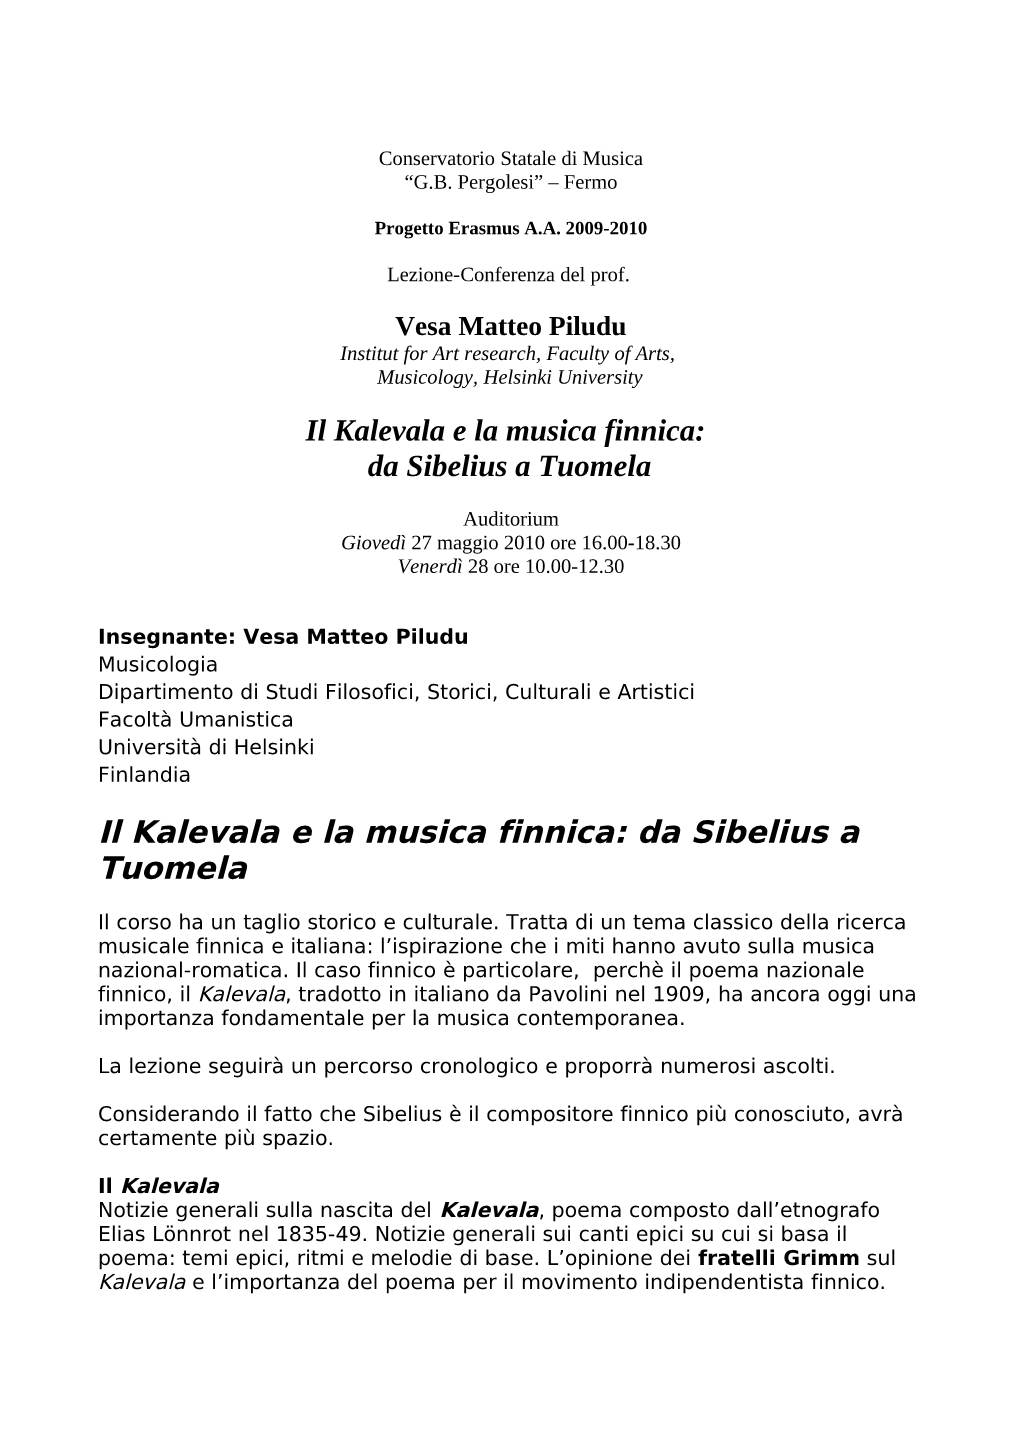 Il Kalevala E La Musica Finnica: Da Sibelius a Tuomela